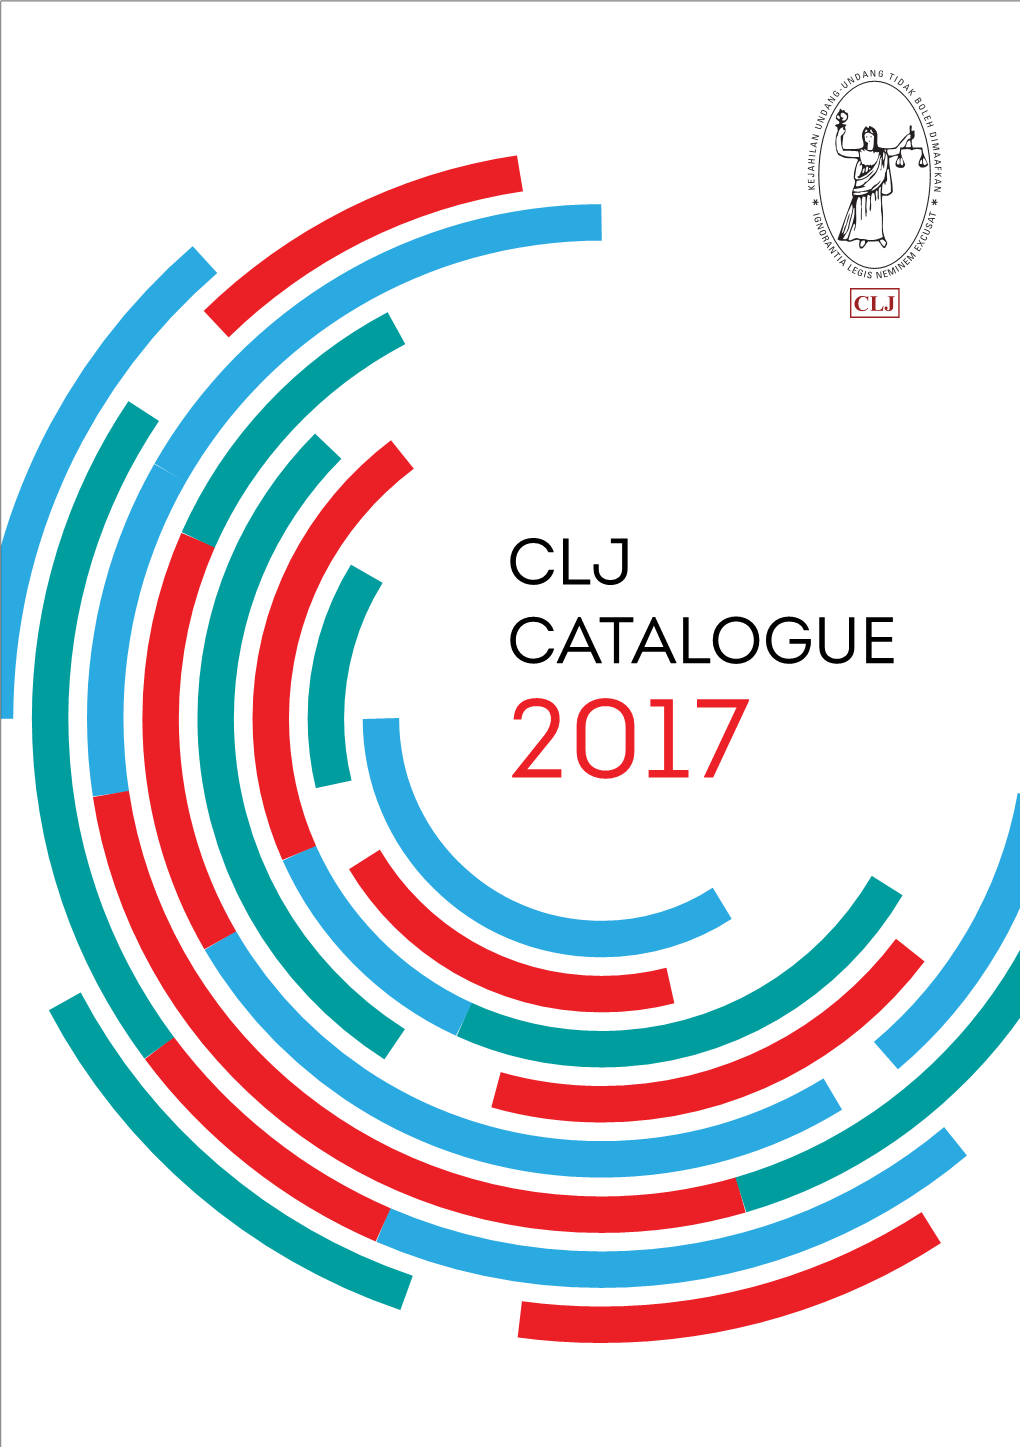 Clj Catalogue 2017 Content